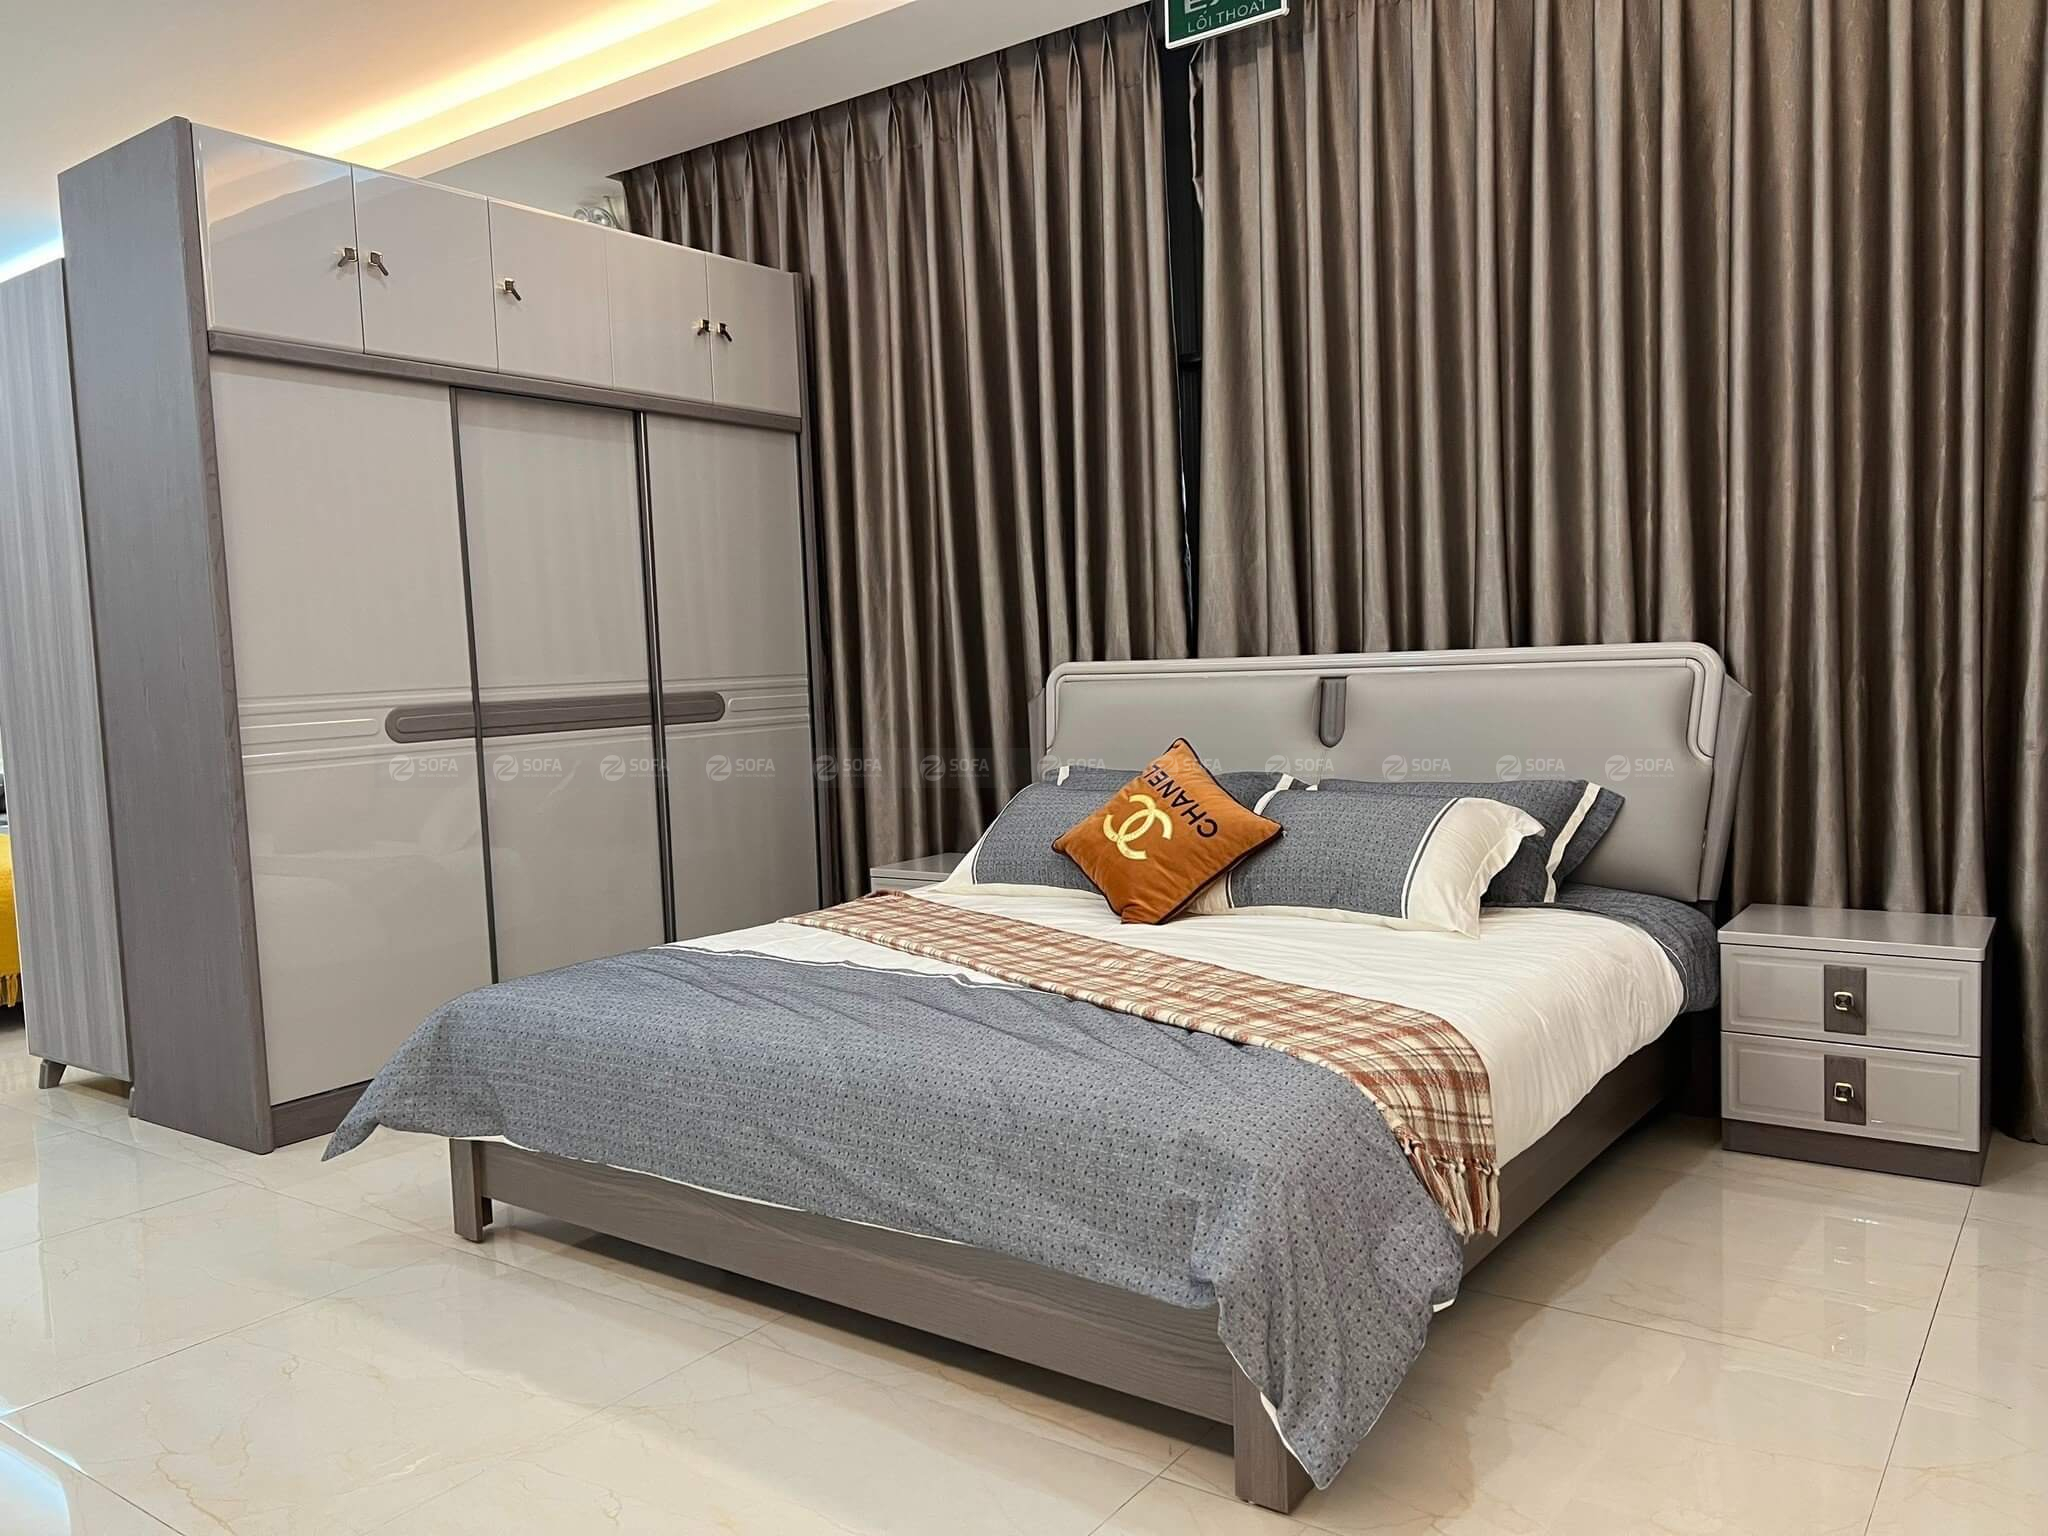 Lựa chọn giường ngủ phù hợp cho căn phòng hiện đại